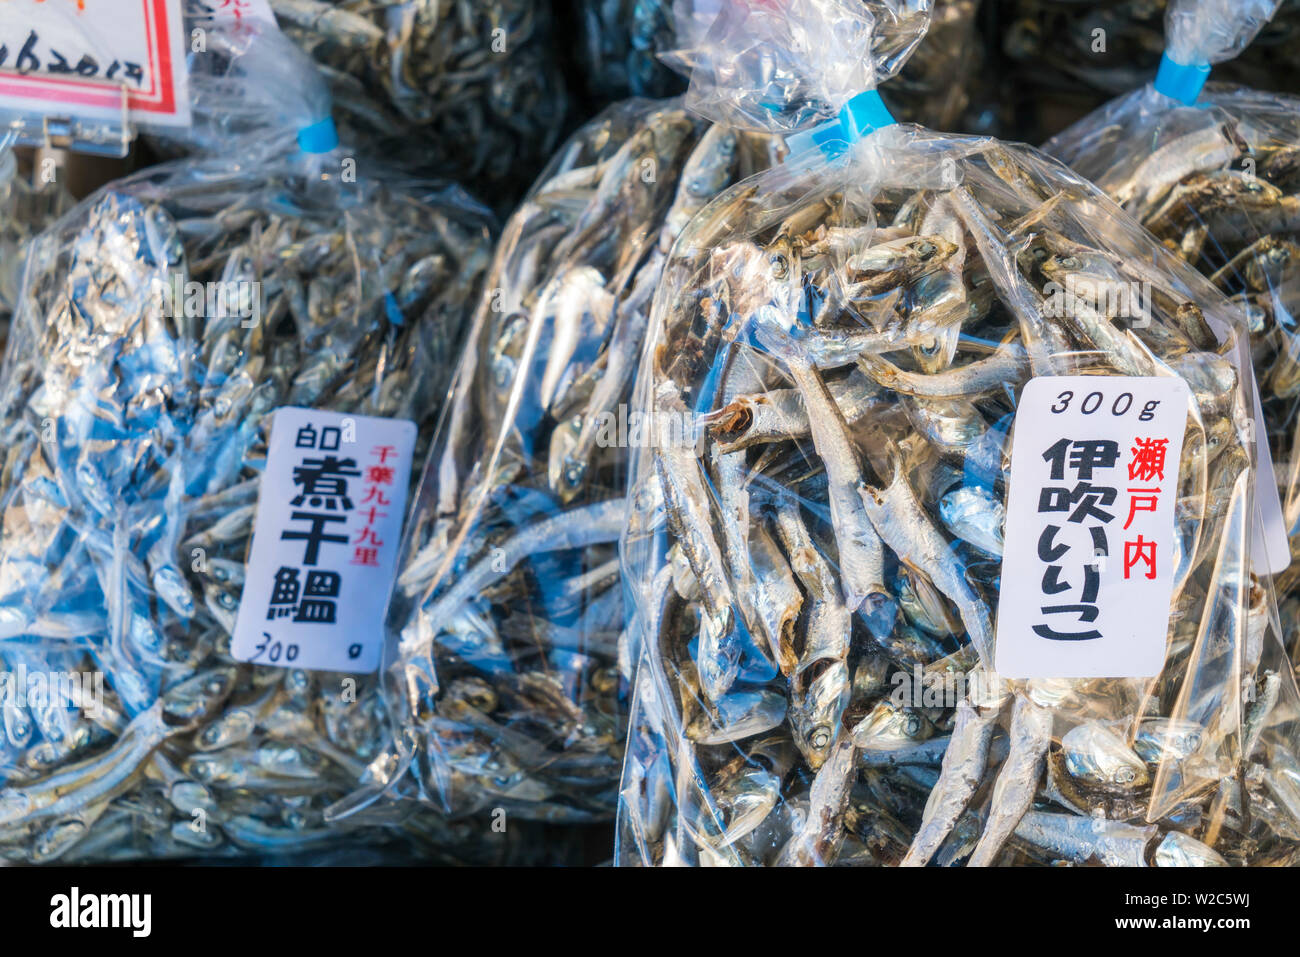 Dried fish, Tsukiji Central Fish Market, Tokyo, Japan Stock Photo